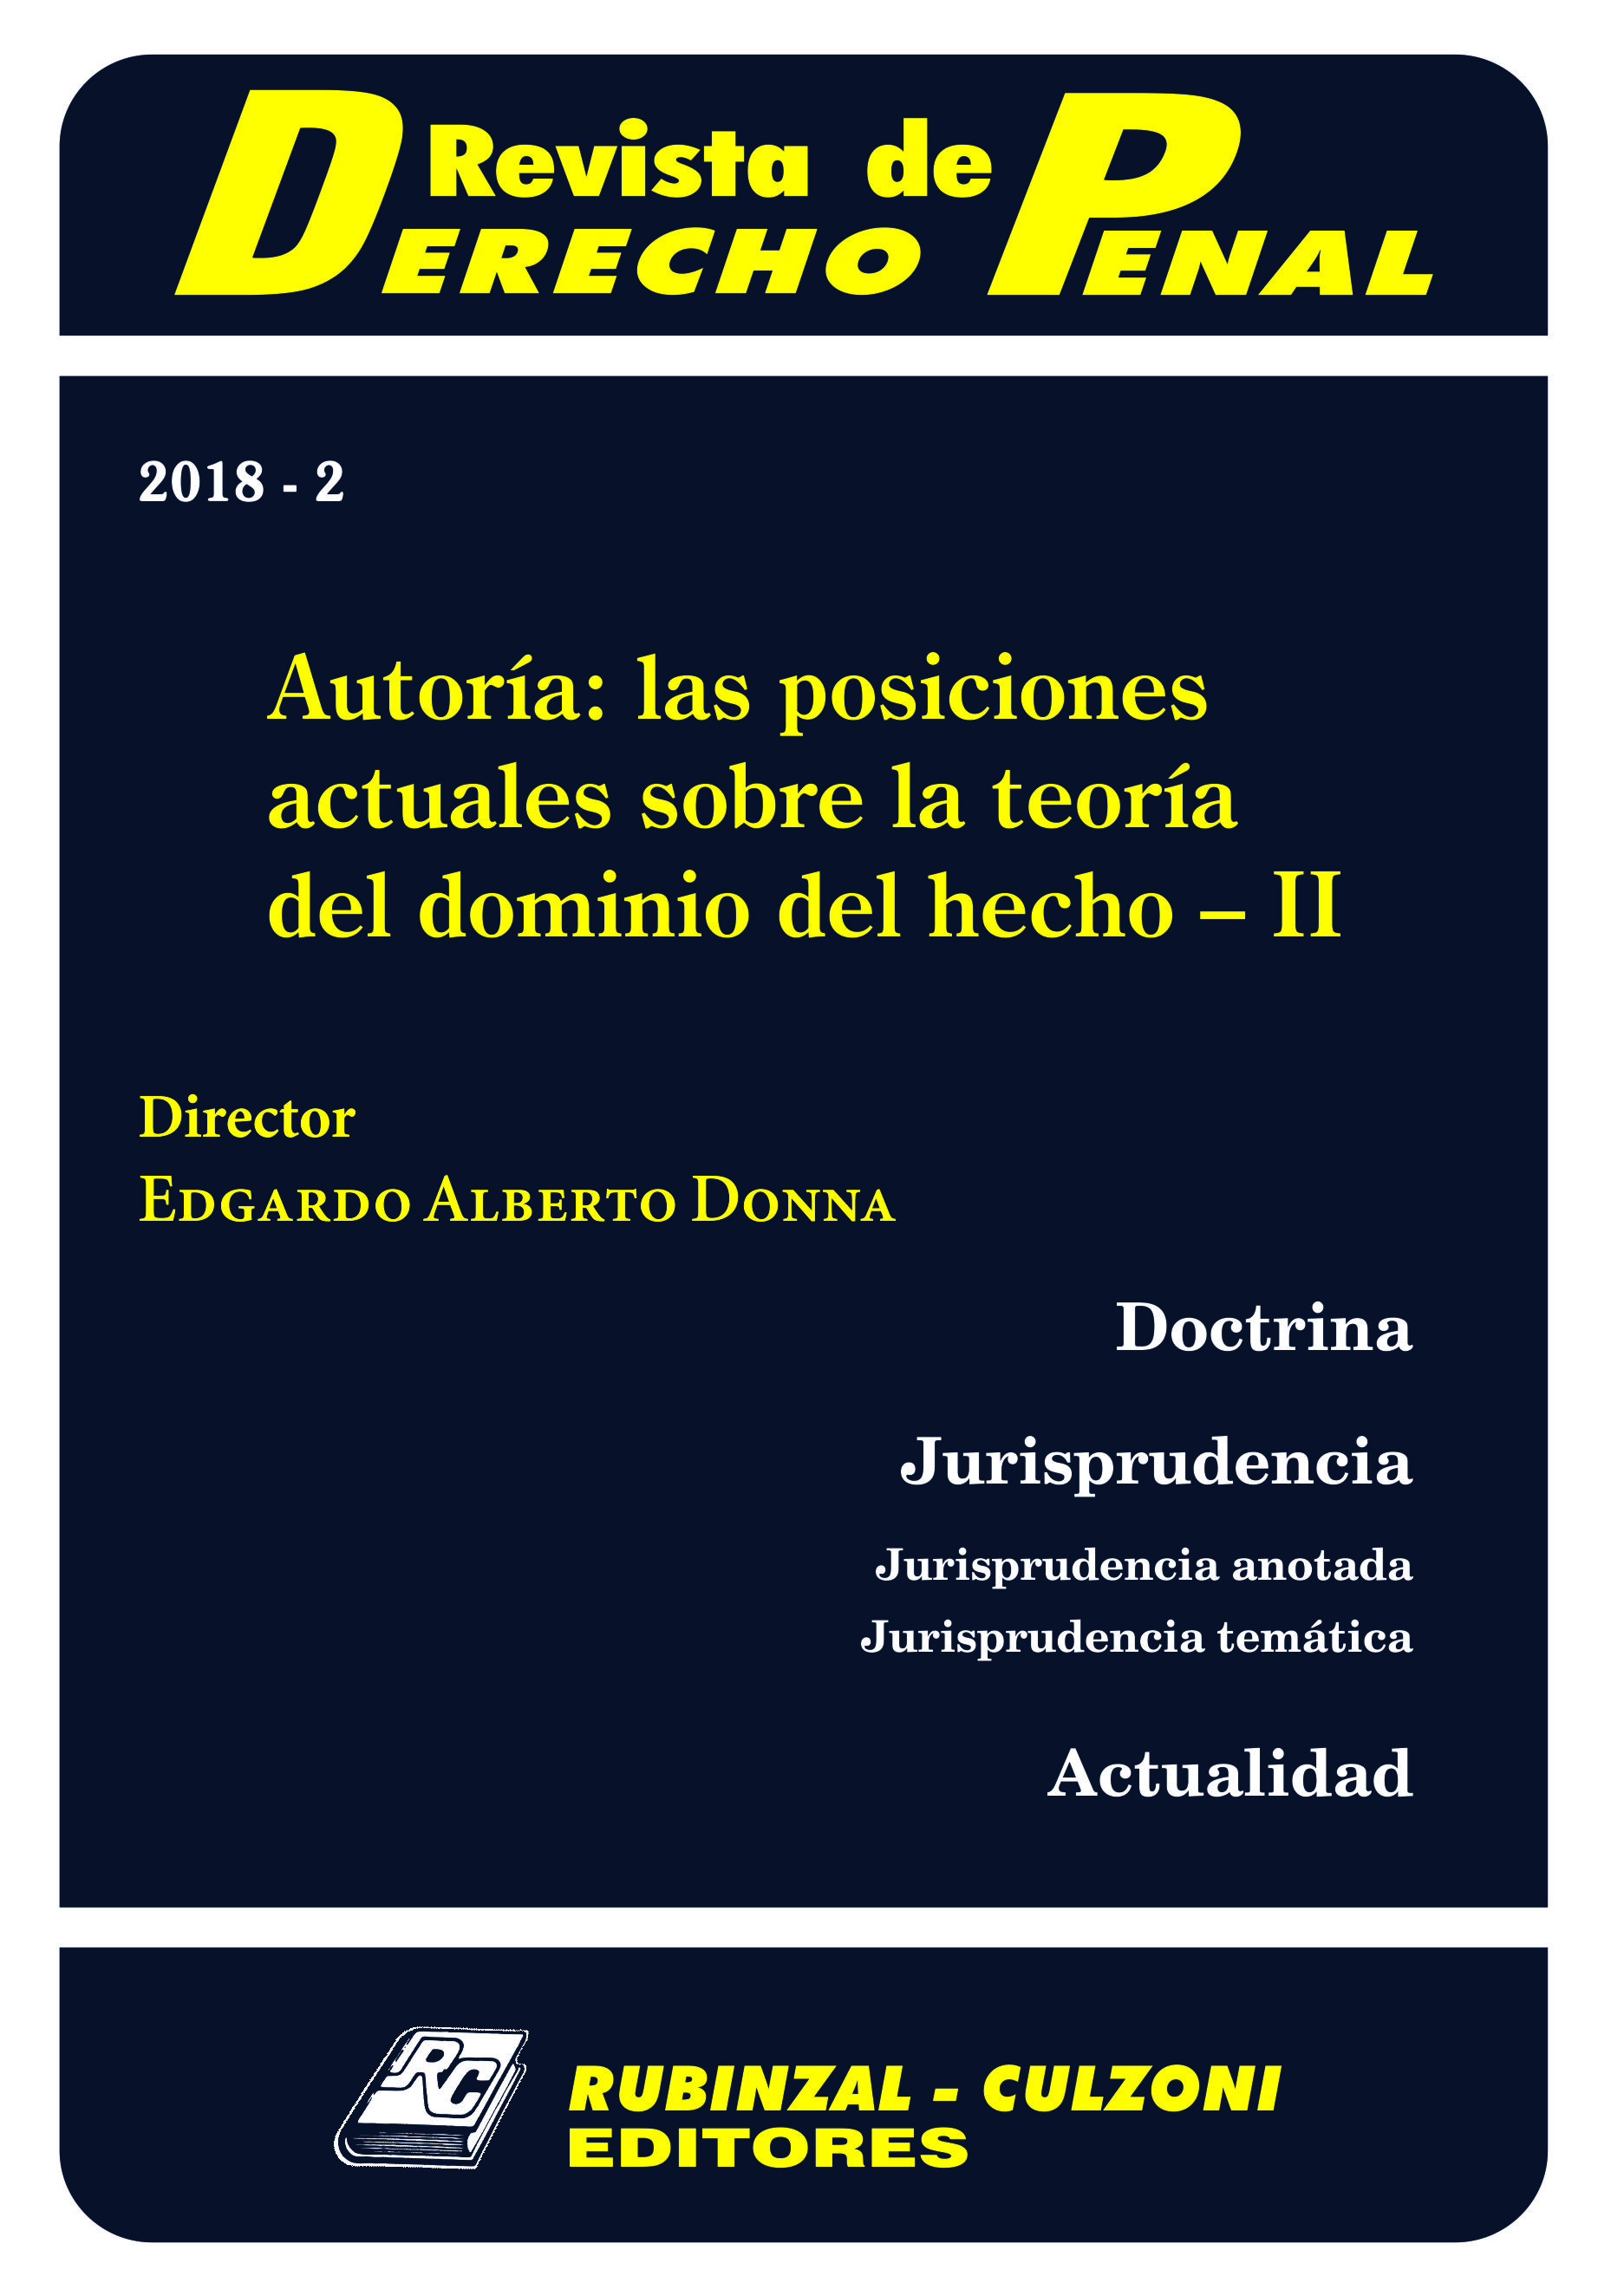 Revista de Derecho Penal - Autoría: las posiciones actuales sobre la teoría del dominio del hecho - II